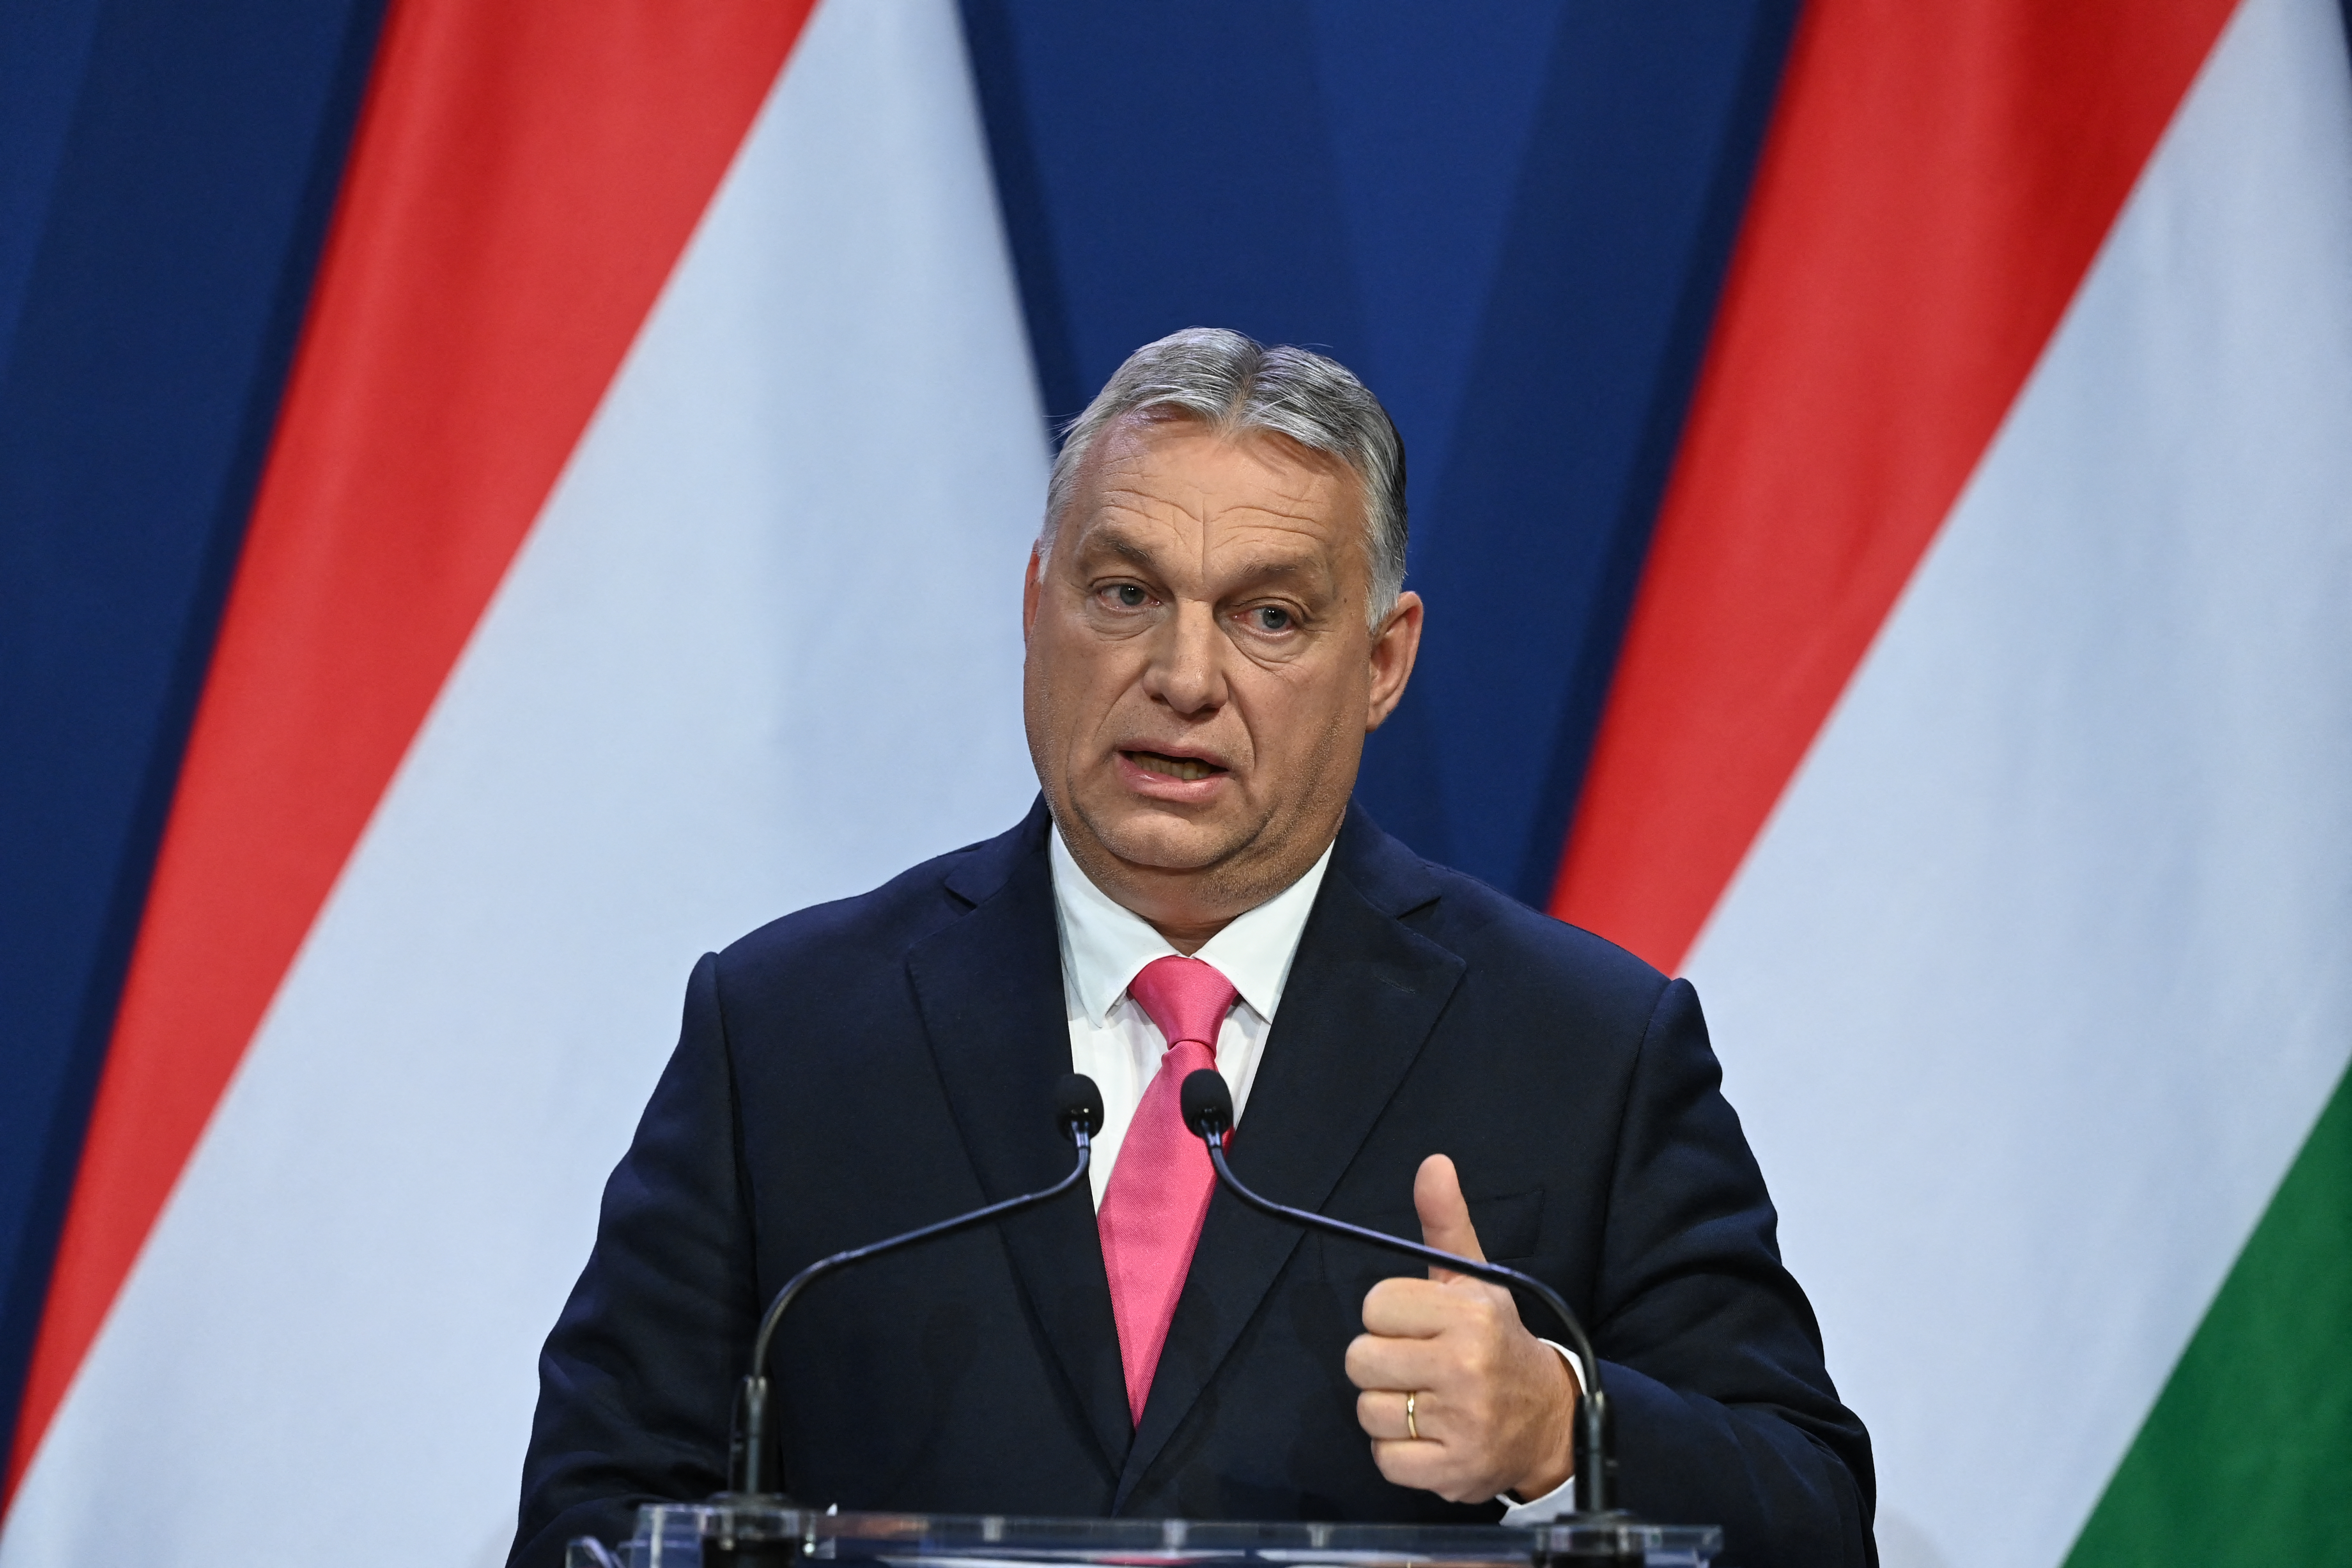 Hitelből bőkezű az Orbán-kormány – nehéz csomagot örökölhet az utódja